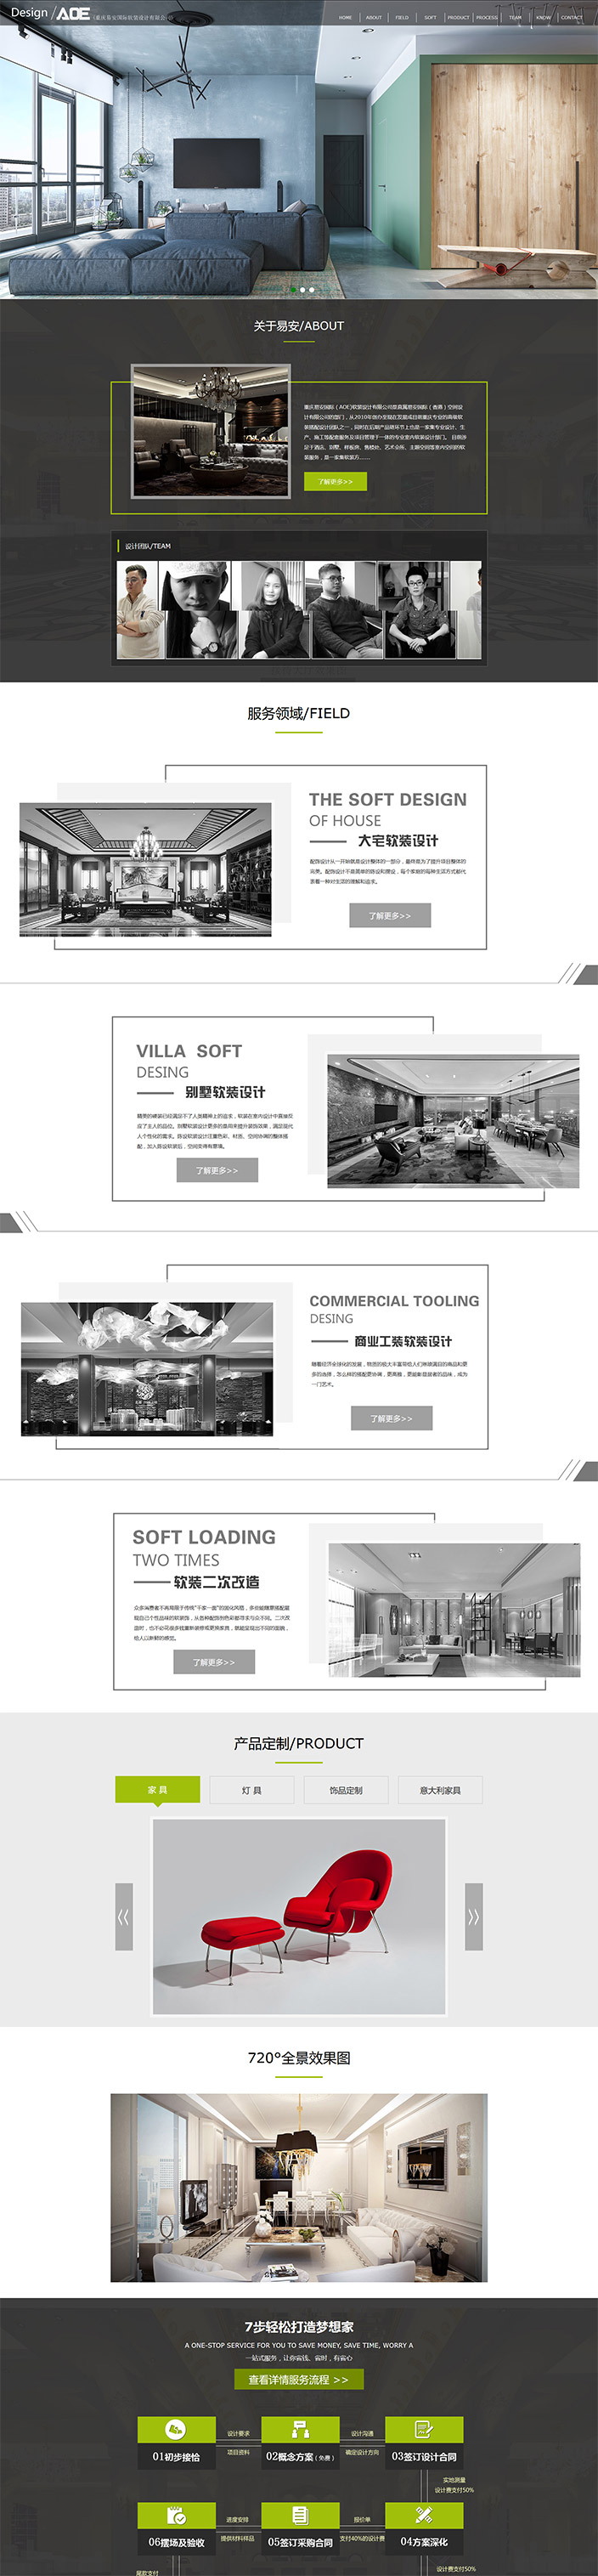 重庆易安国际软装设计有限公司网站建设案例